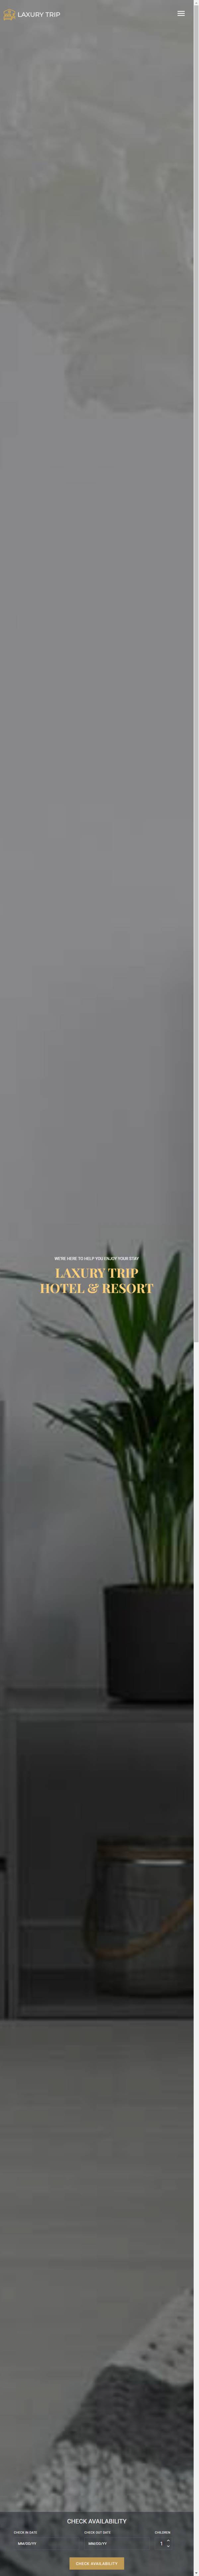 响应式酒店在线预订HTML模板